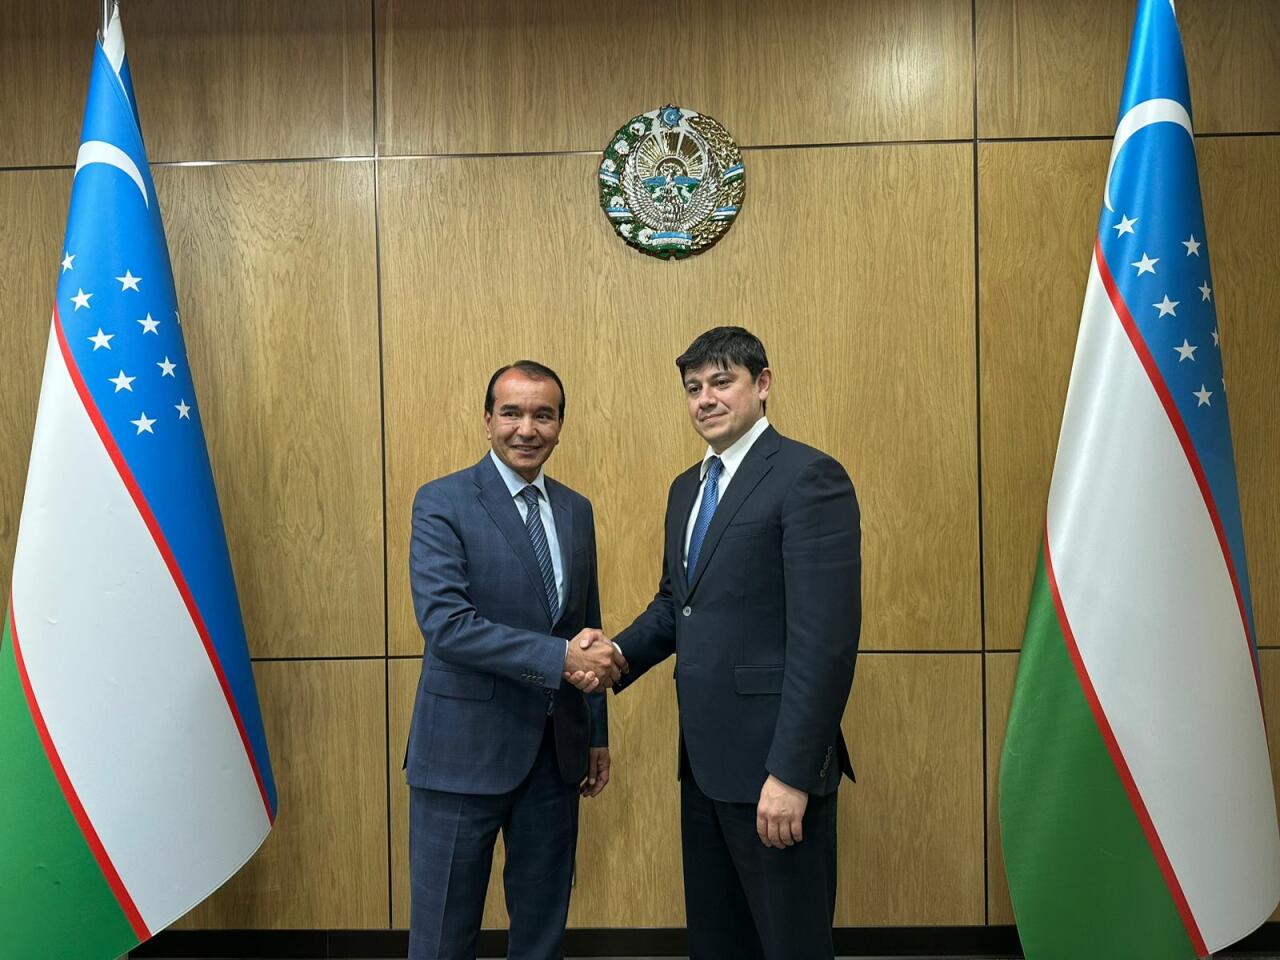 Проведены официальные встречи, касающиеся сотрудничества с Узбекистаном в области диаспоры